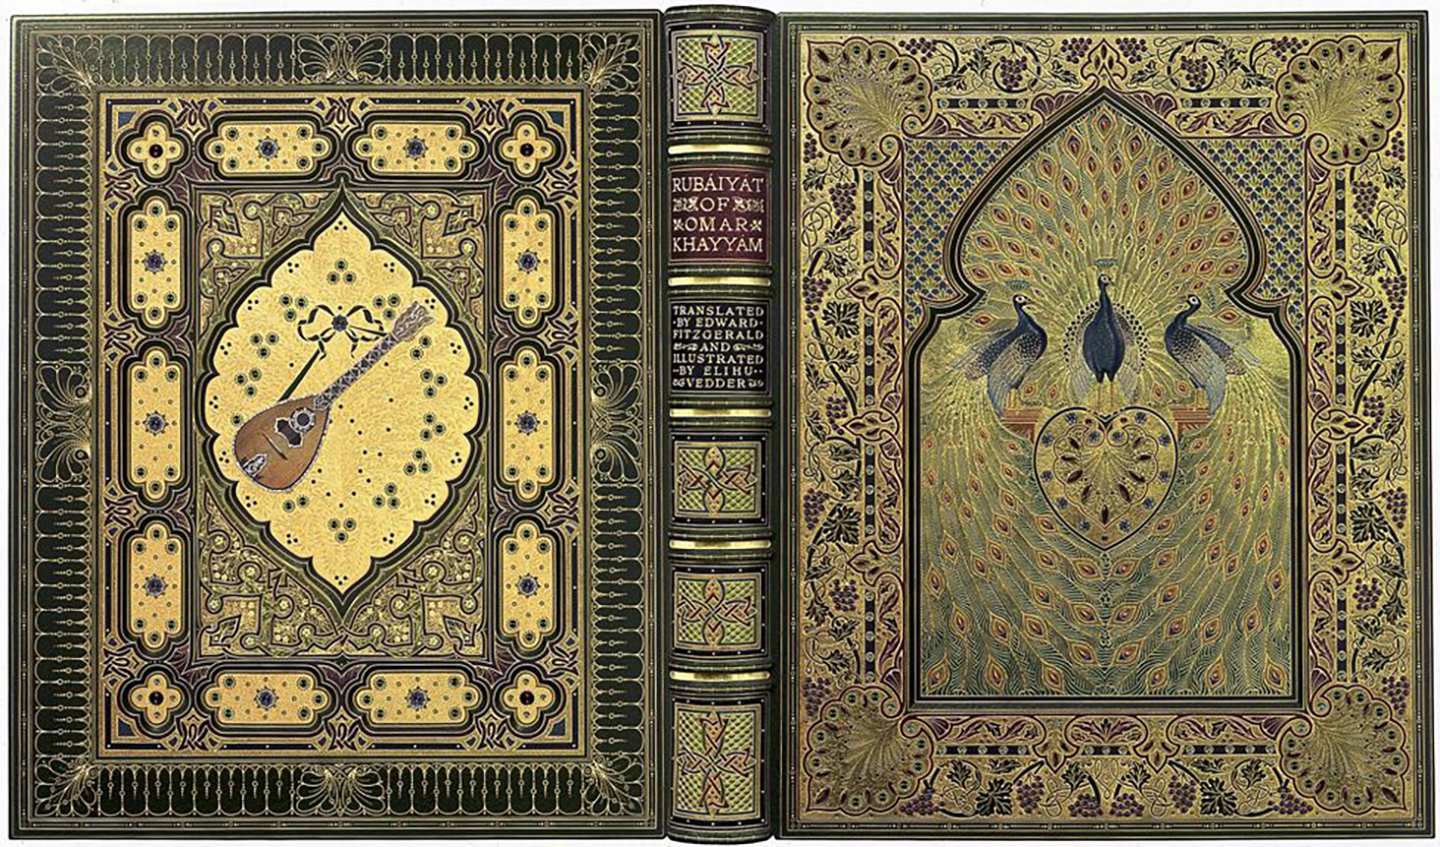 Original "The Rubaiyat of Omar" Khayyam bound by Sangorski & Sutcliffe 1909-11